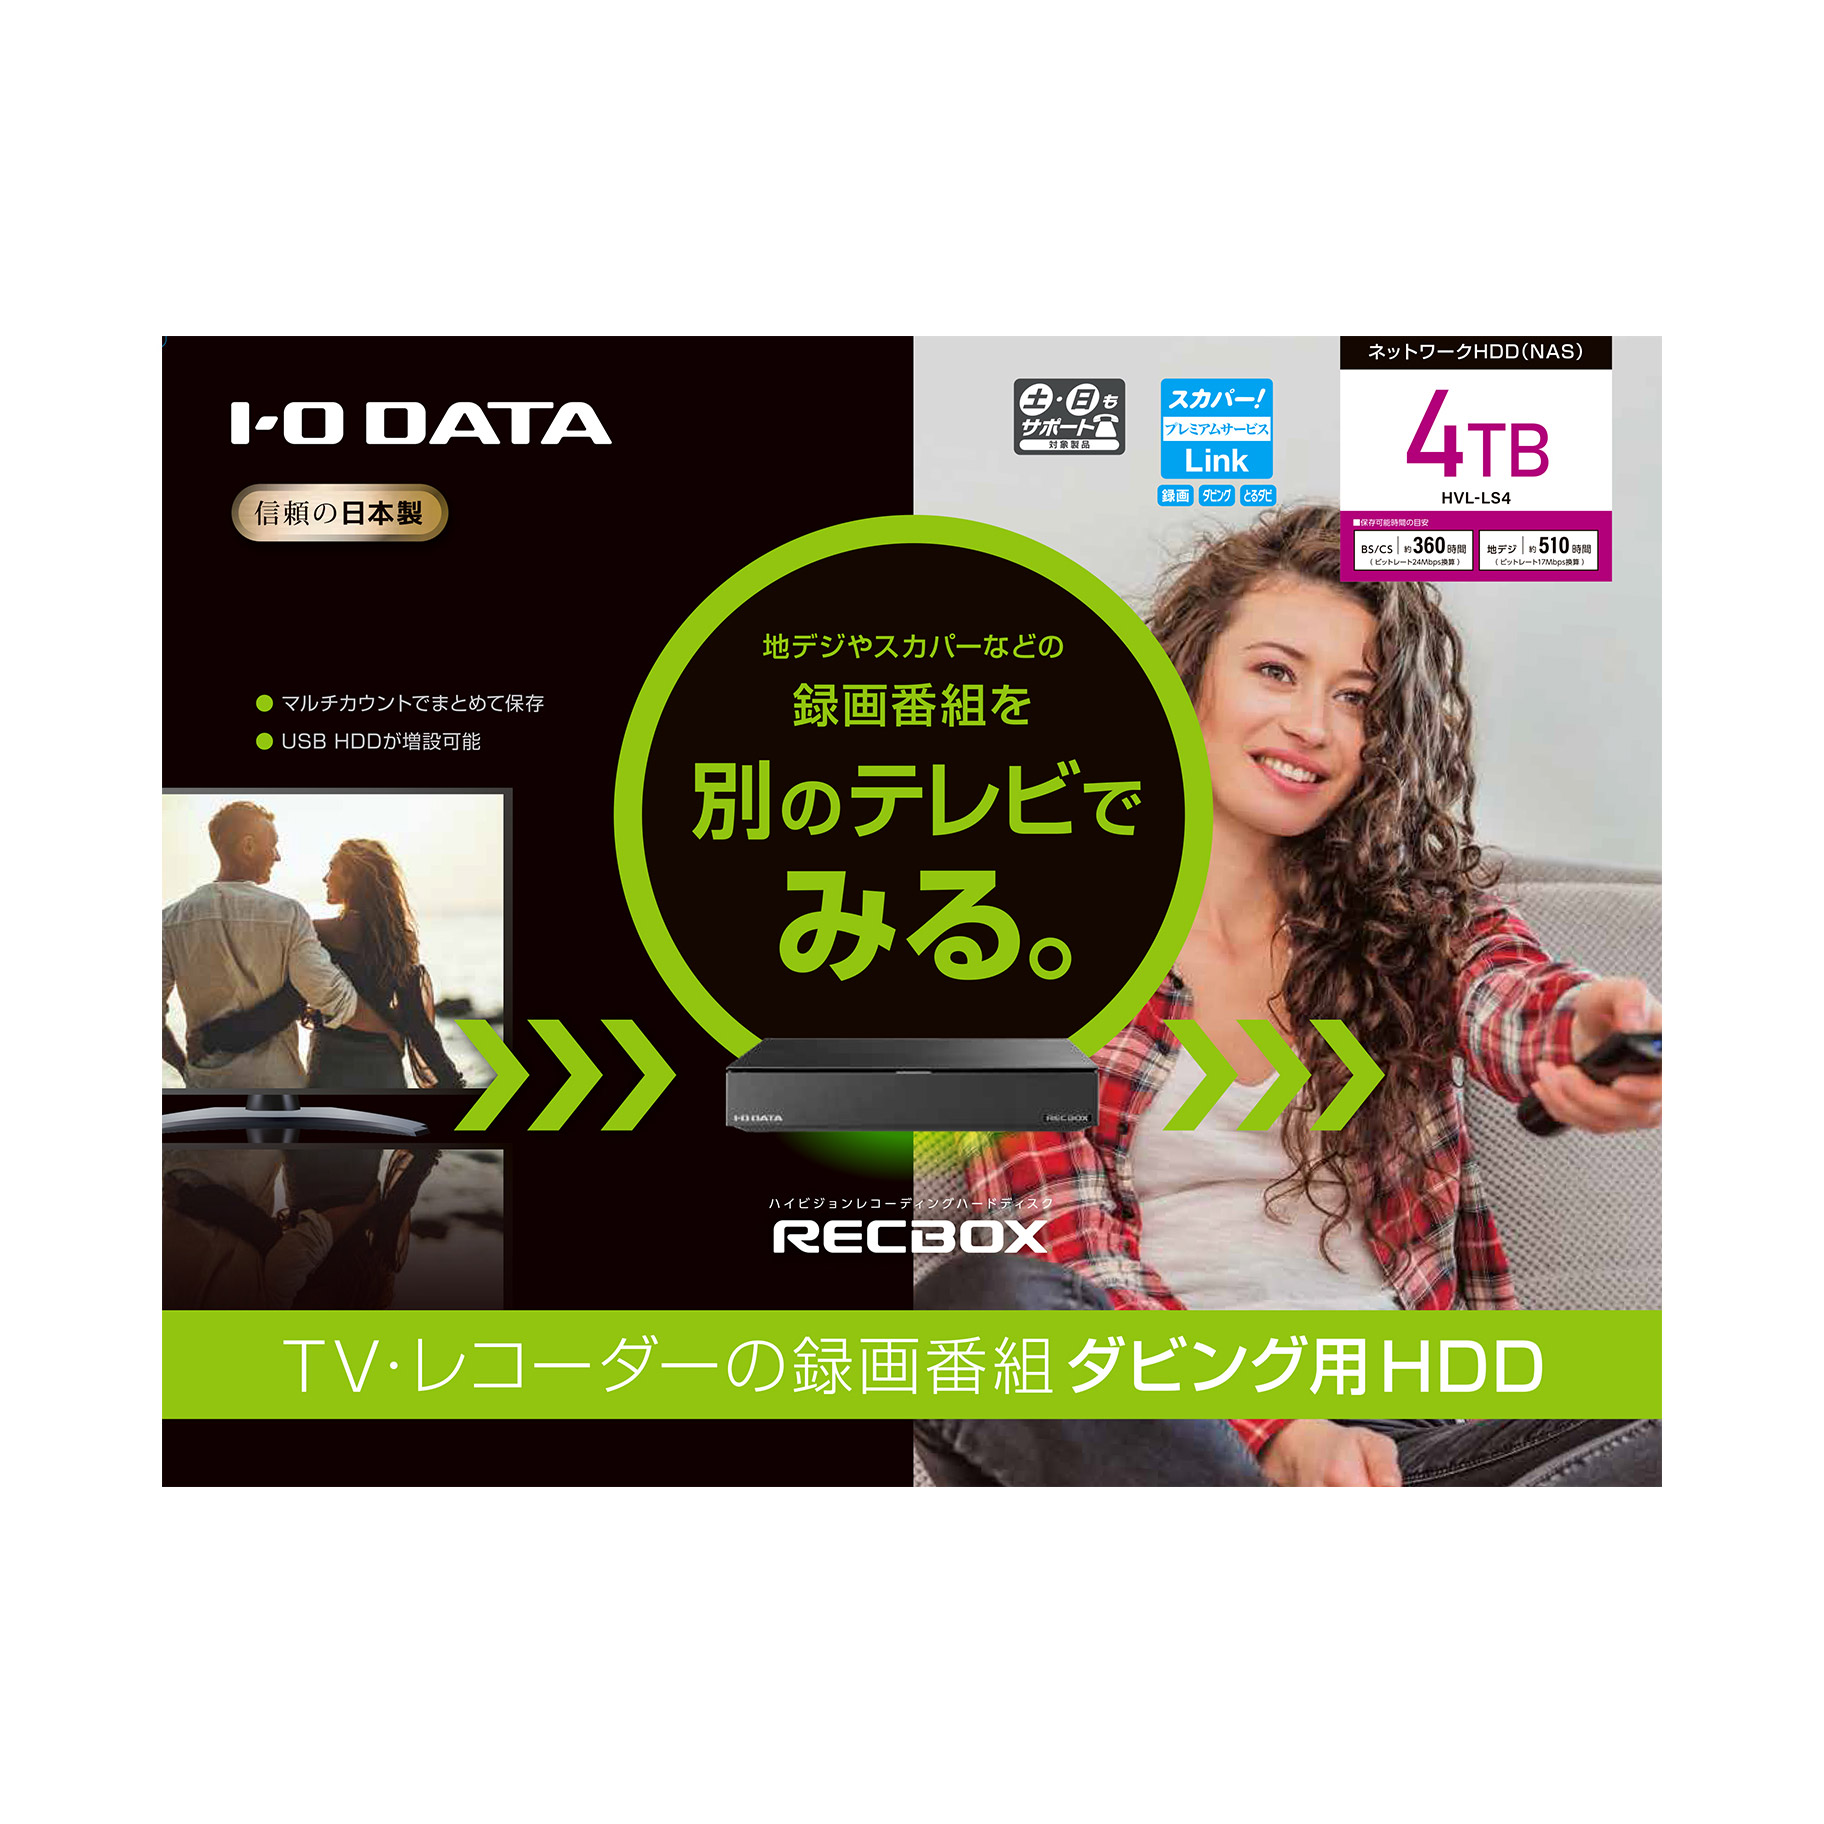 I-O DATA HDD RECBOXスマホ対応HVL-LS4-